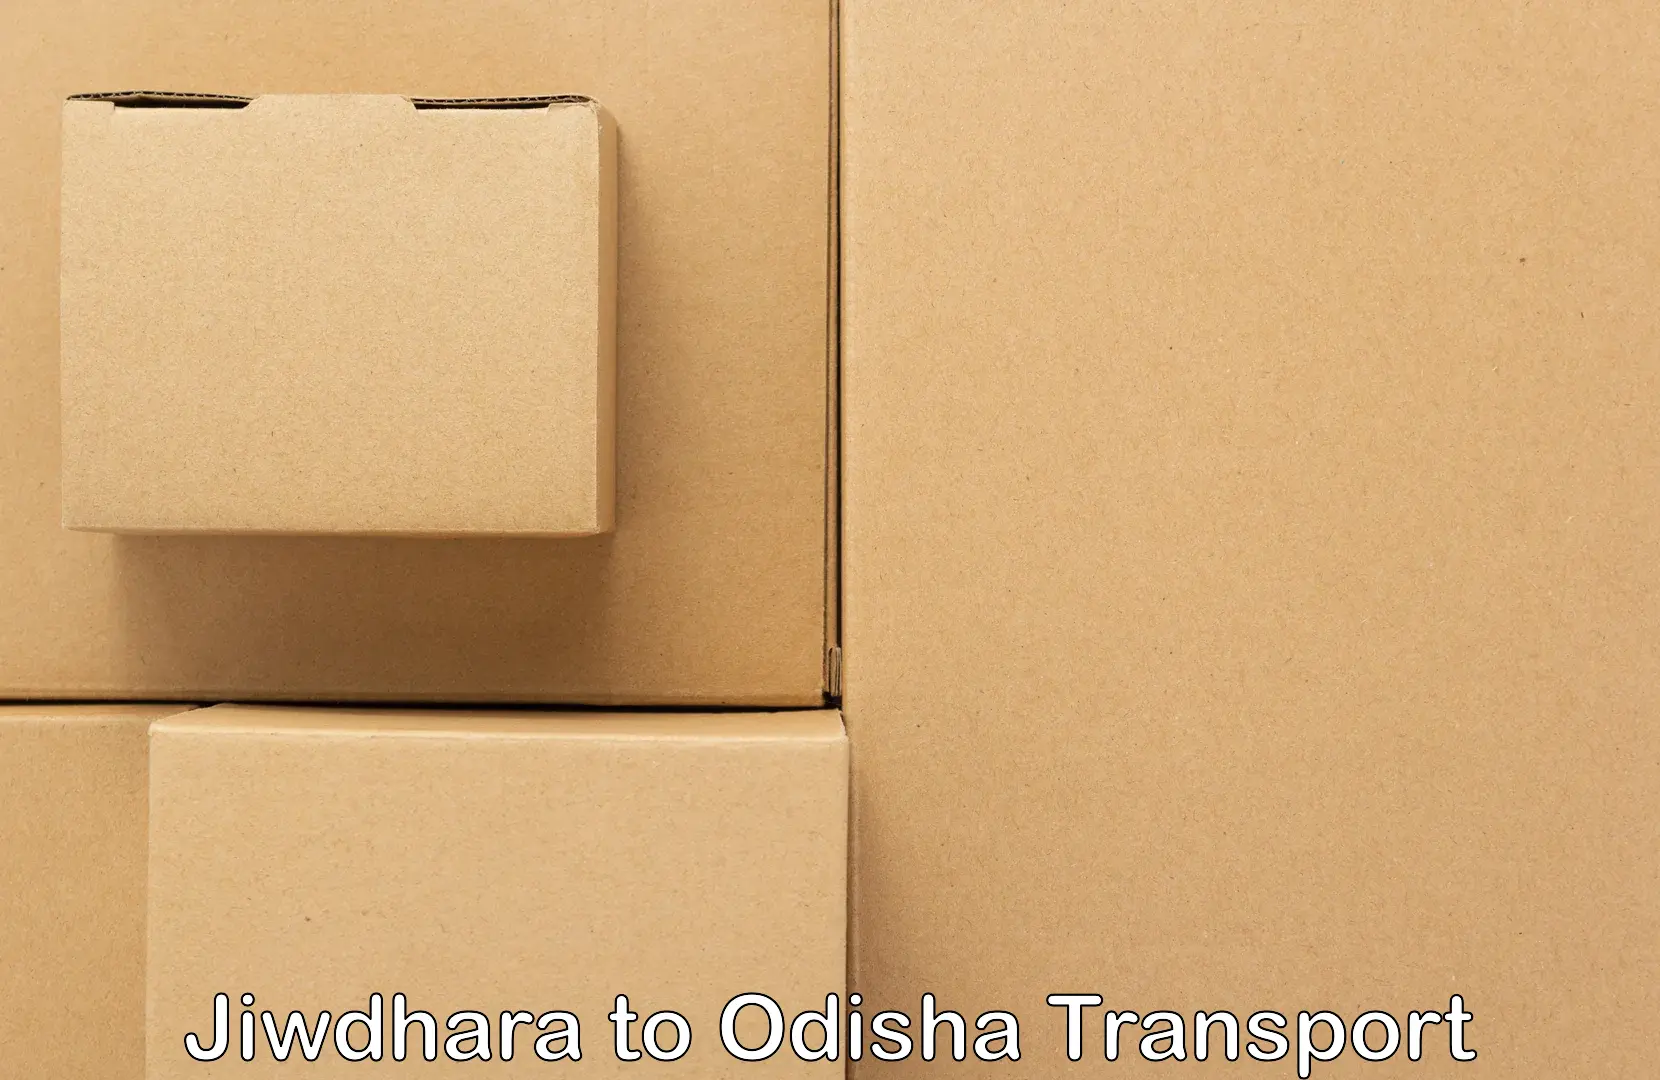 Air cargo transport services Jiwdhara to Sohela